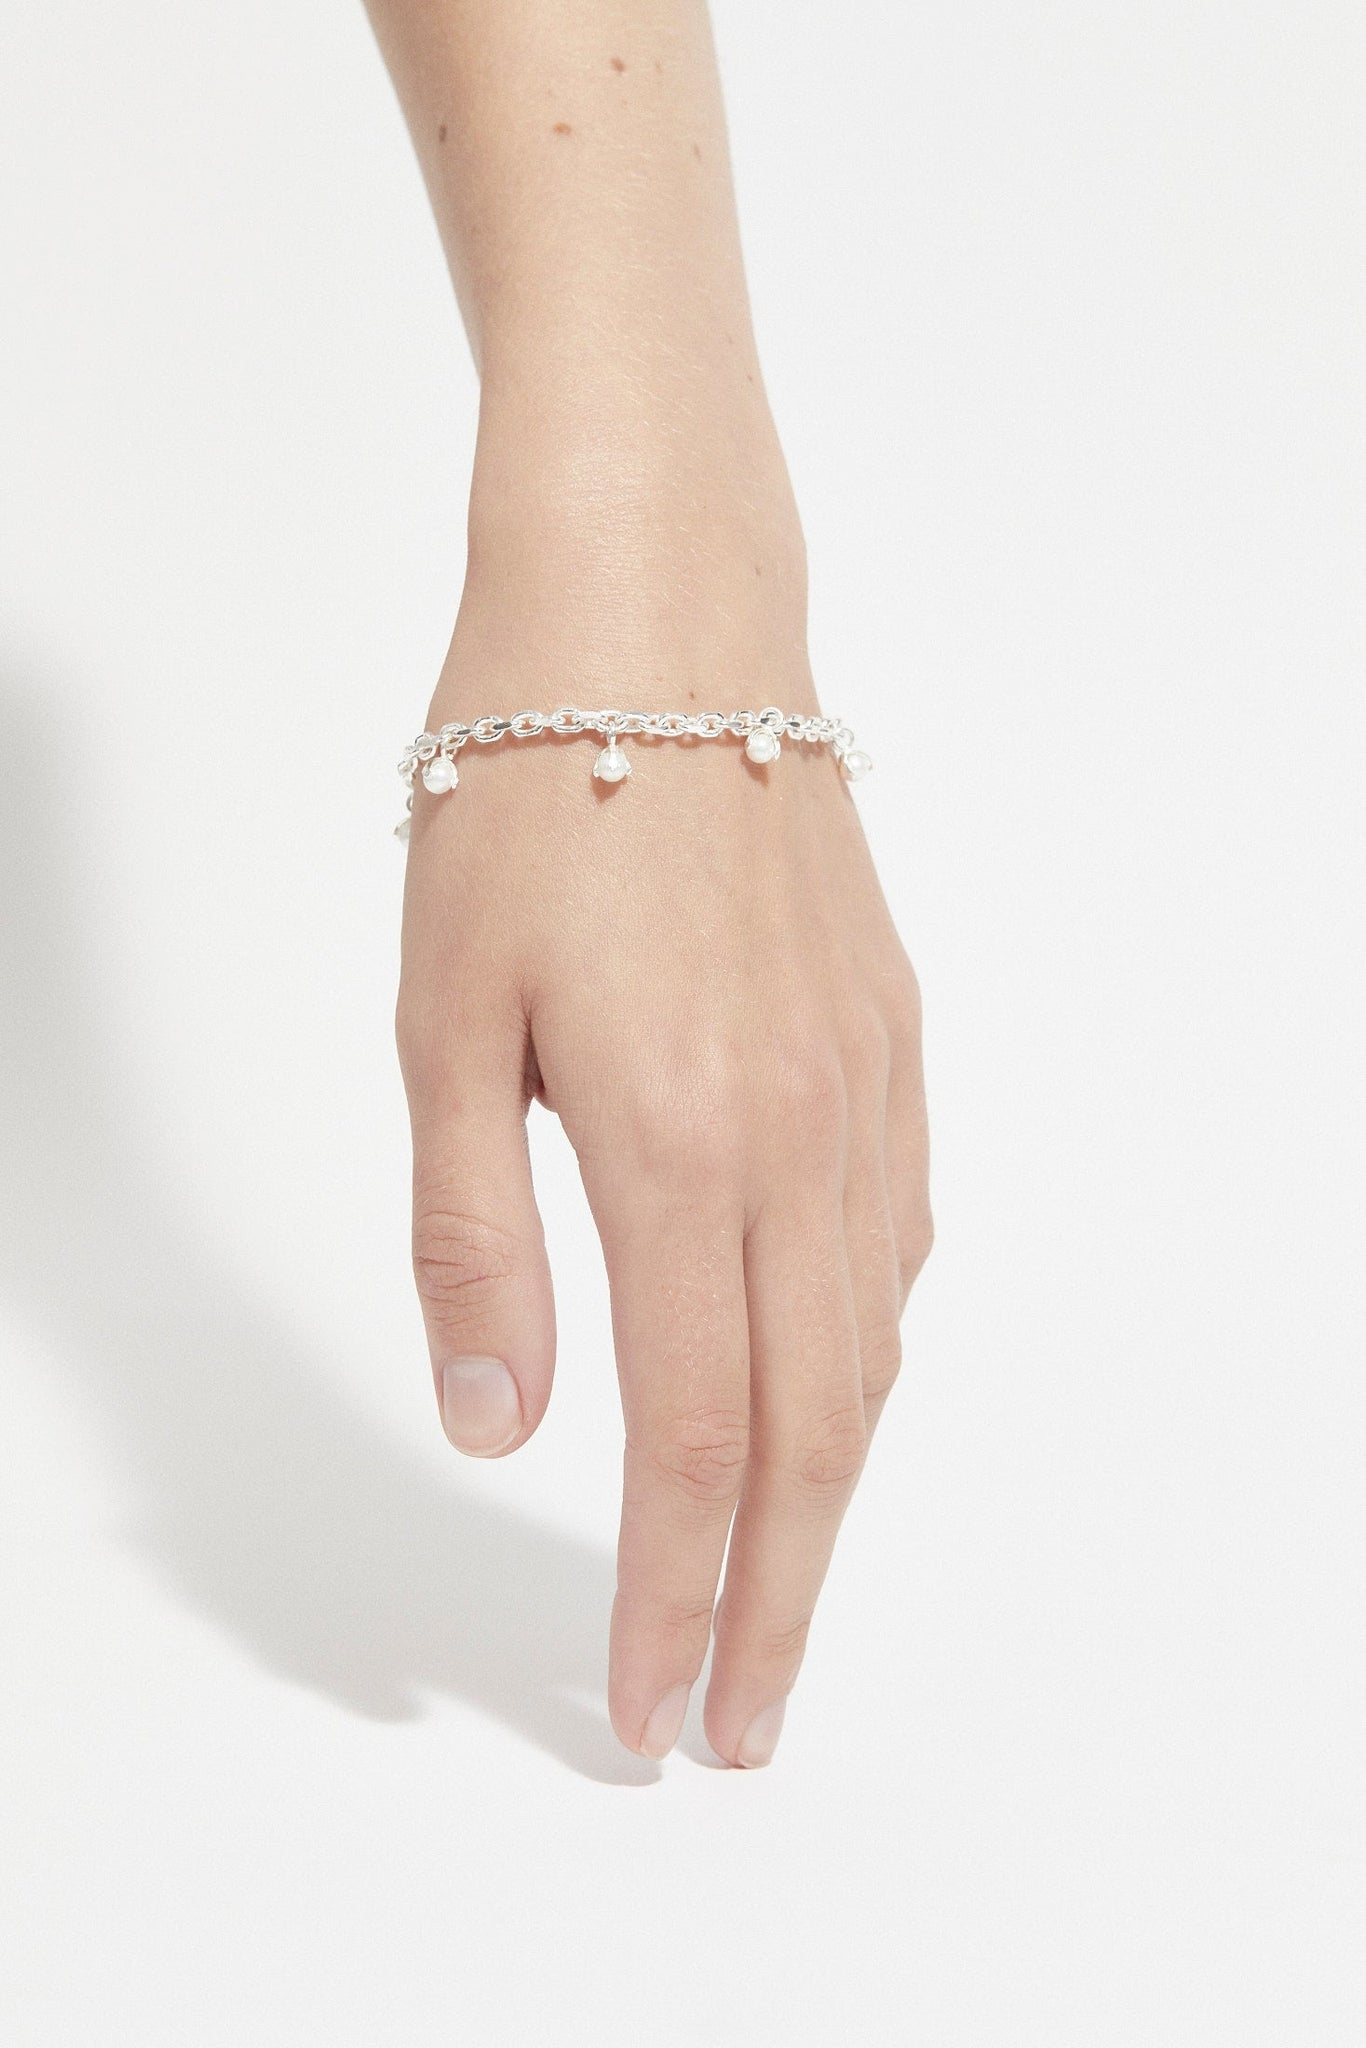 Pearled Bracelet - Cornelia Webb - 2